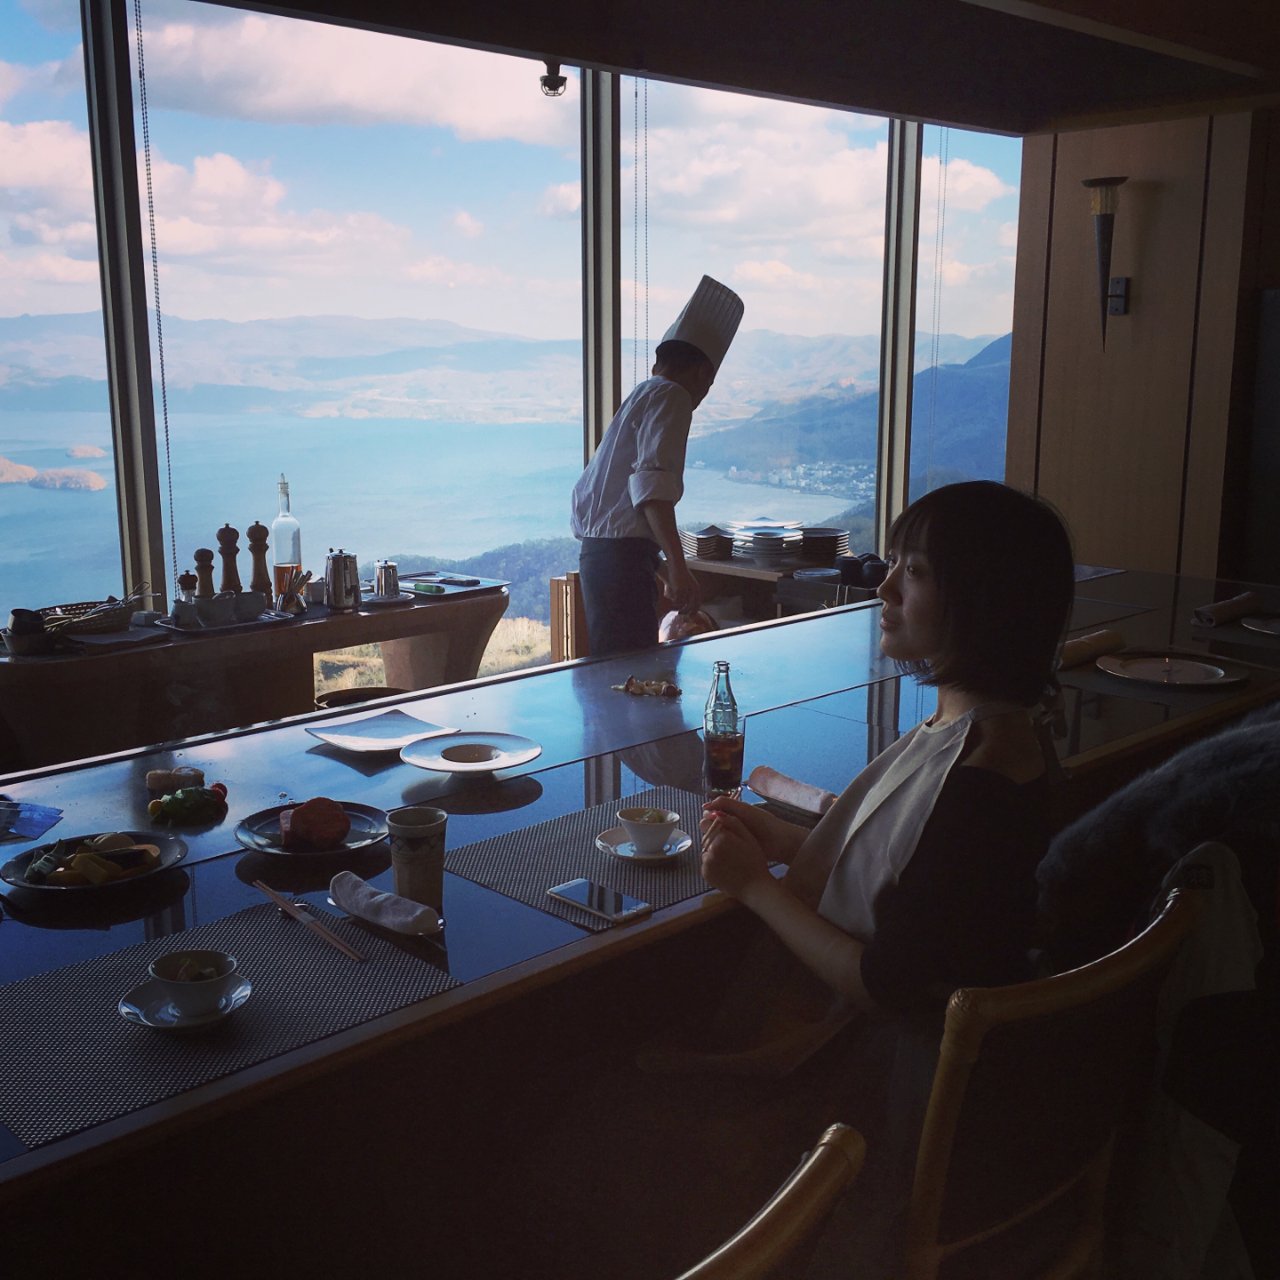 日本北海道最美湖景餐厅 超五星级的享受...